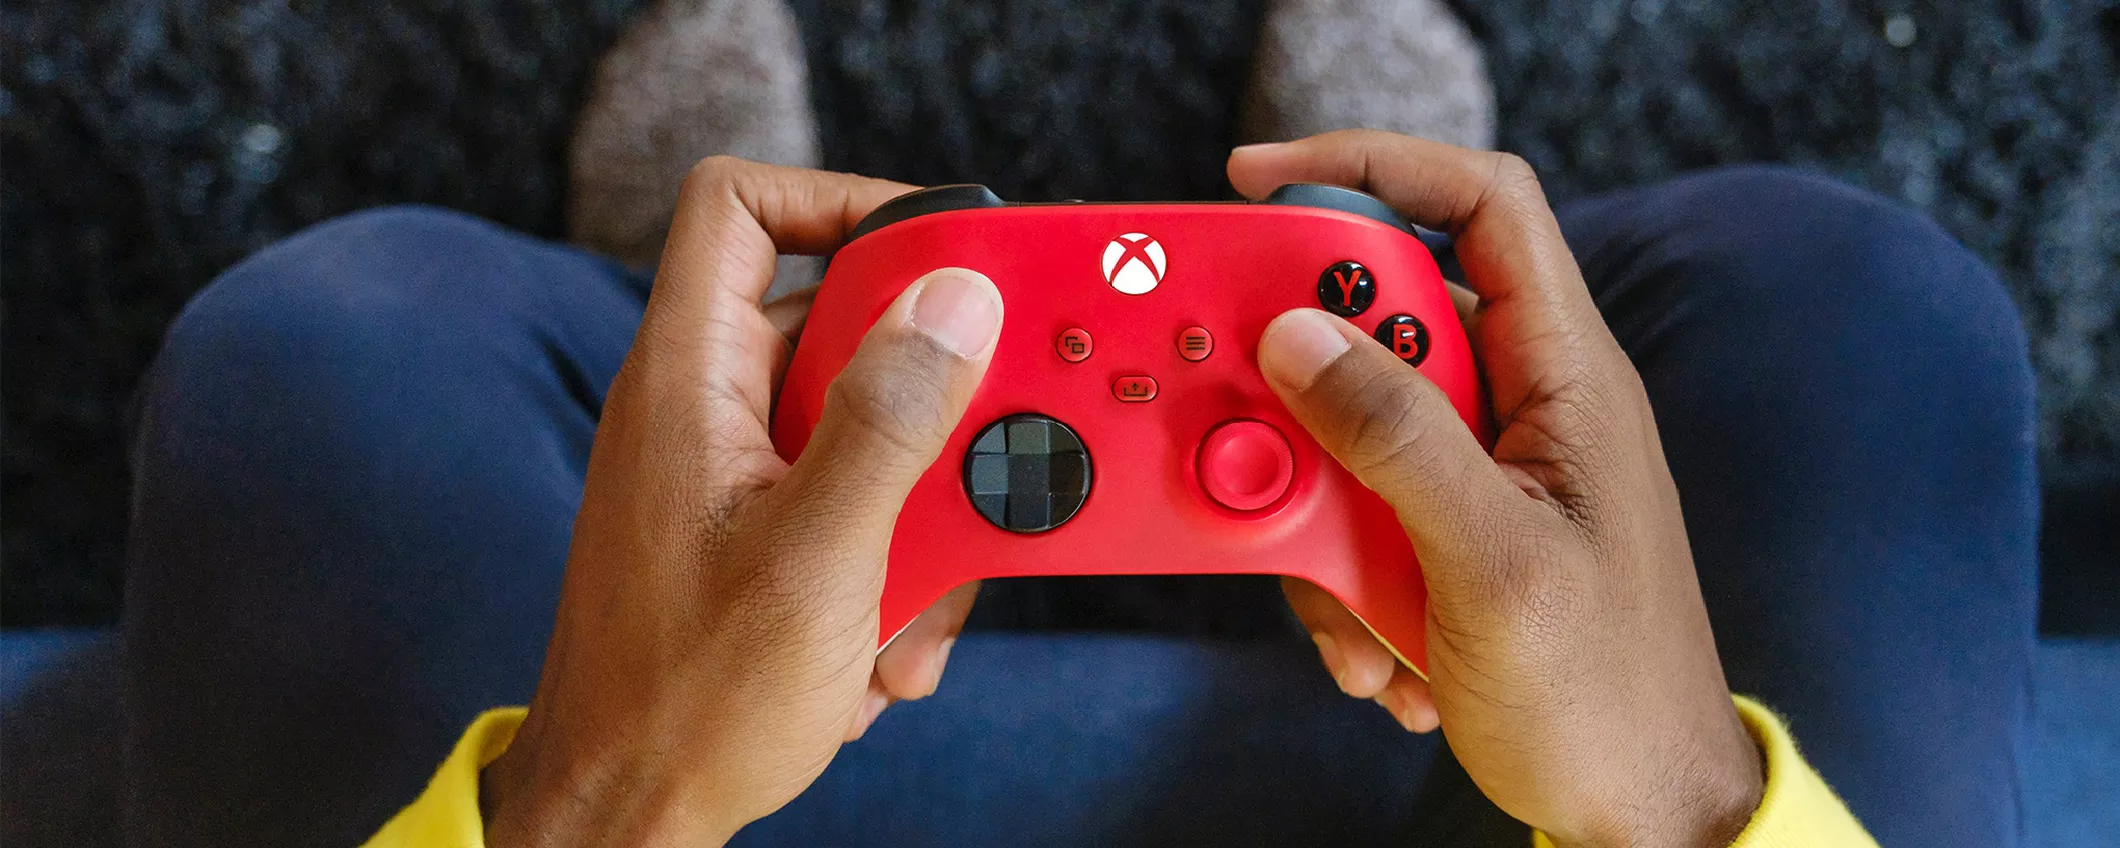 Disponibile Pulse Red, la nuova tonalità del controller per Xbox